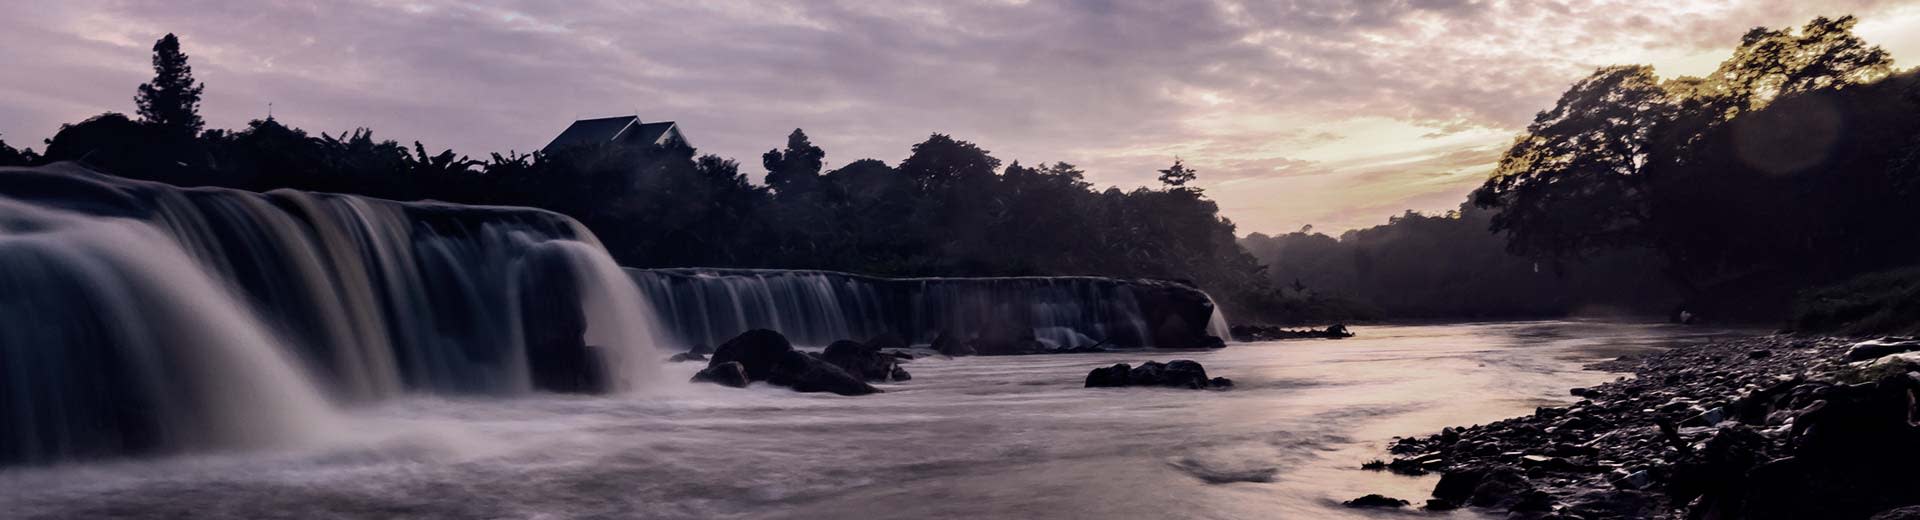 日出时分，贝卡西的帕里吉瀑布与火烈鸟般的天空交相辉映。